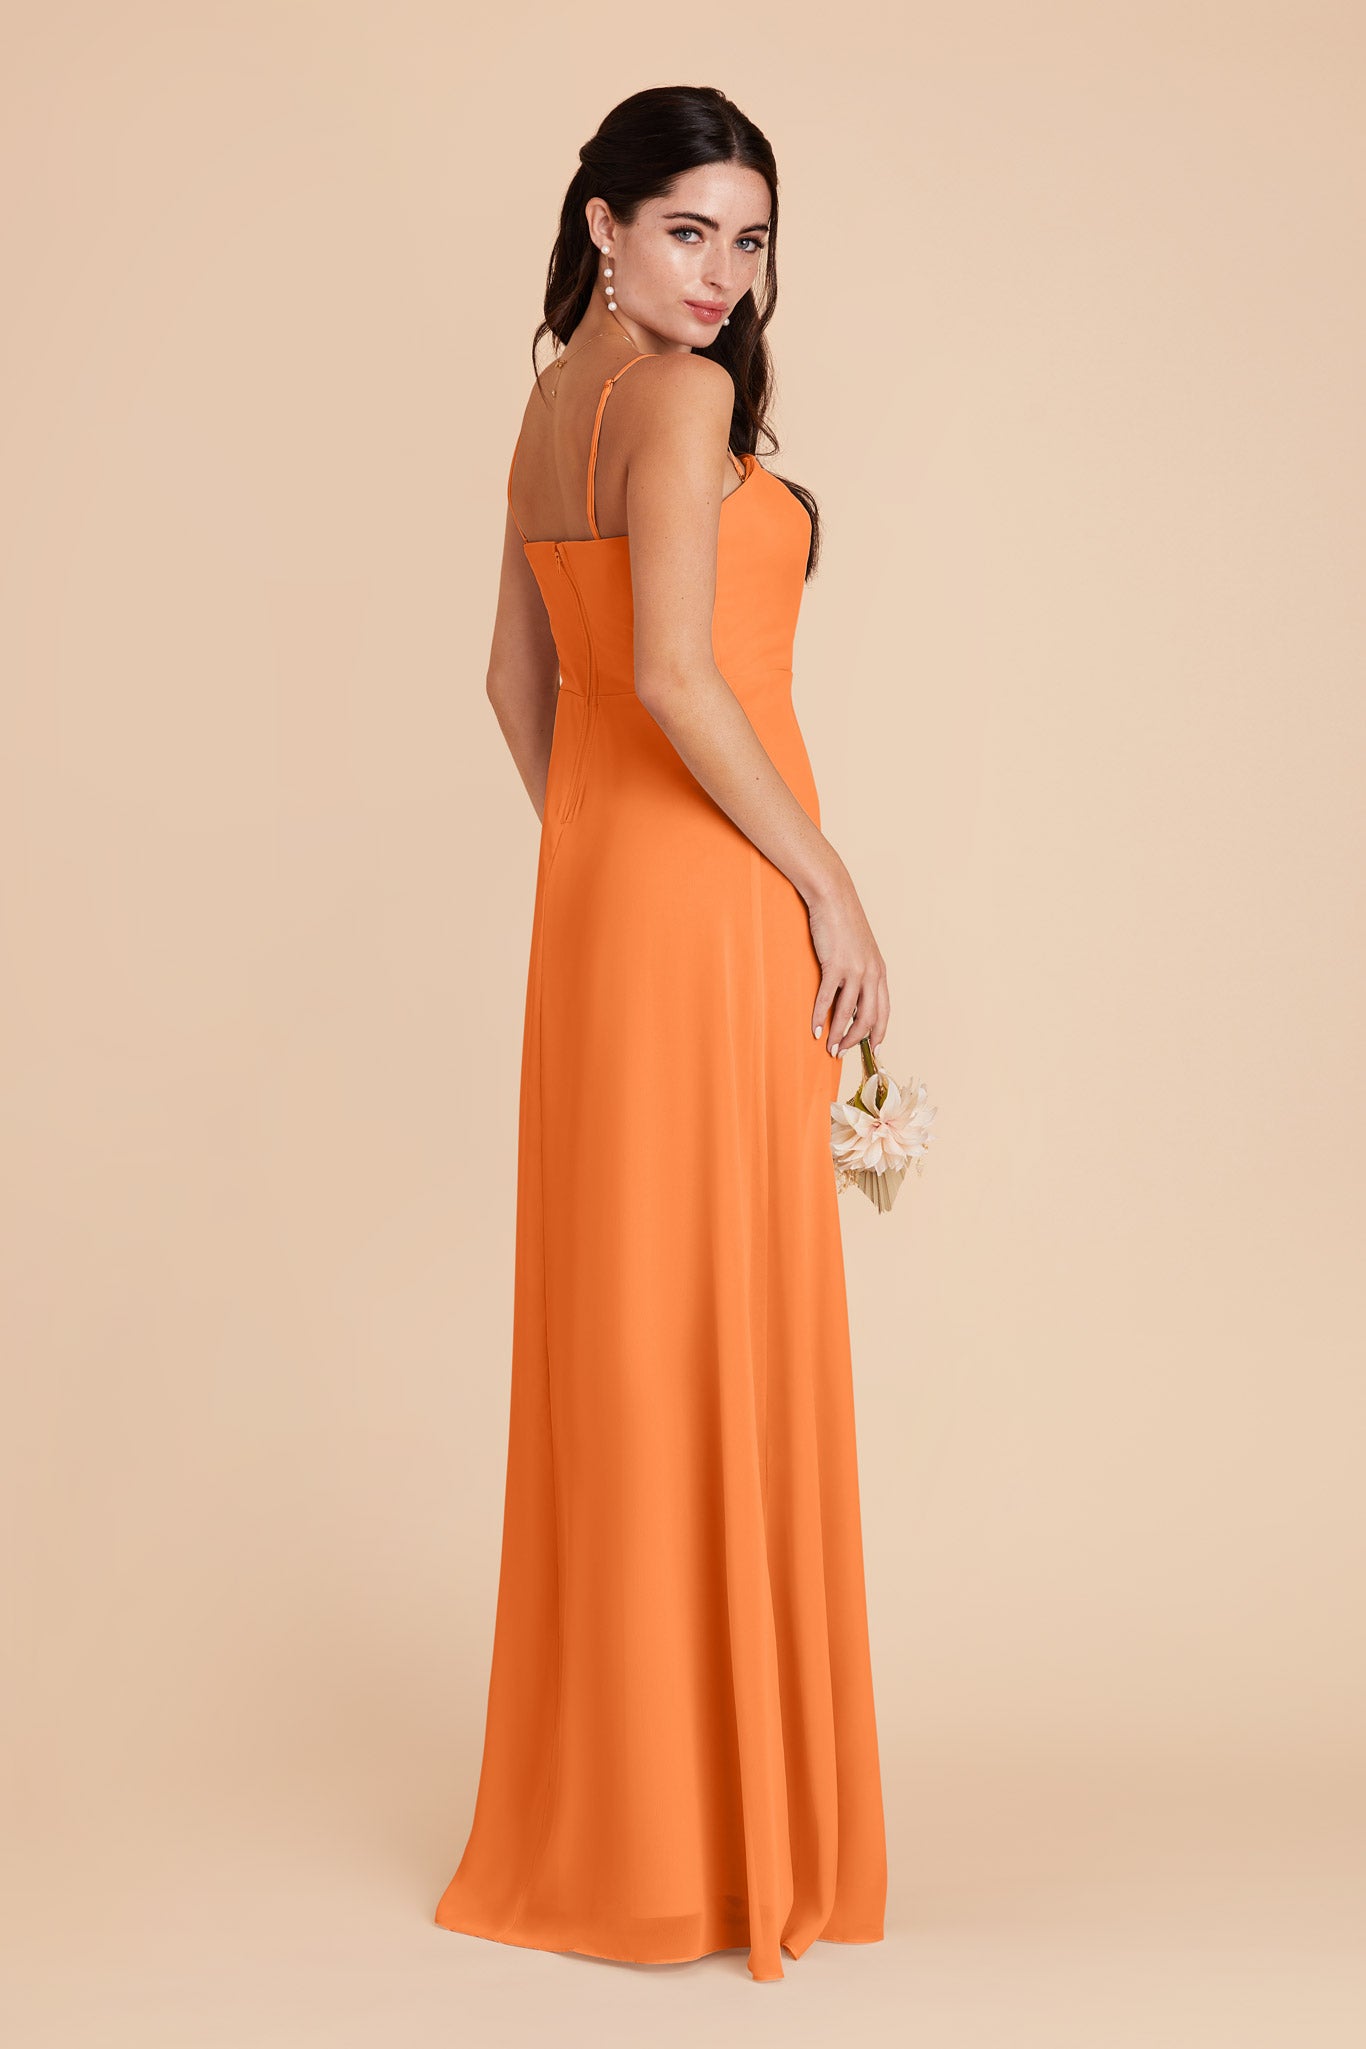 Apricot Chris Convertible Chiffon Dress by Birdy Grey